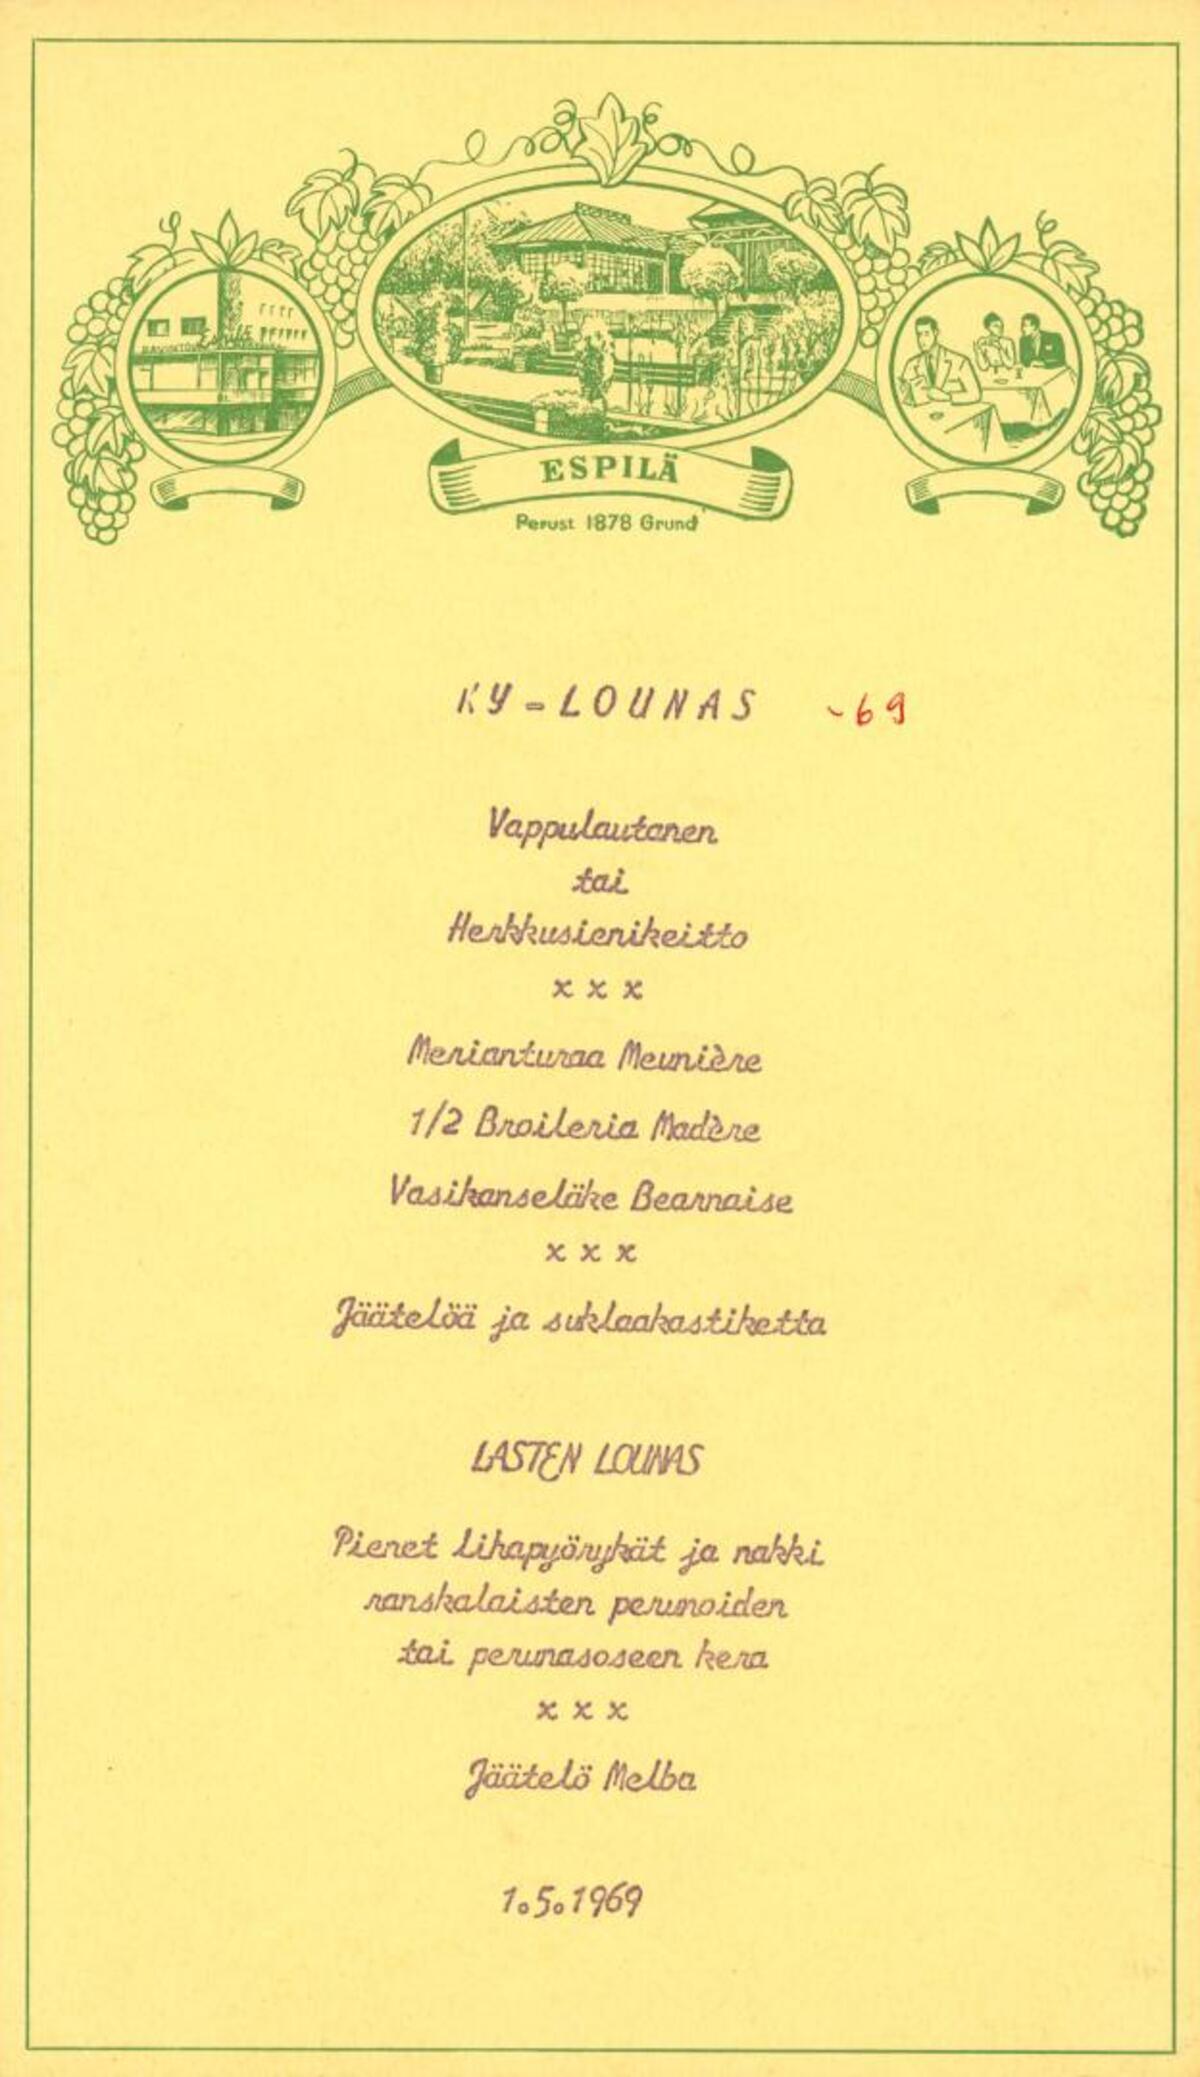 Päivänlista; 1.5.1969, Espilä, Helsinki; KY-lounas